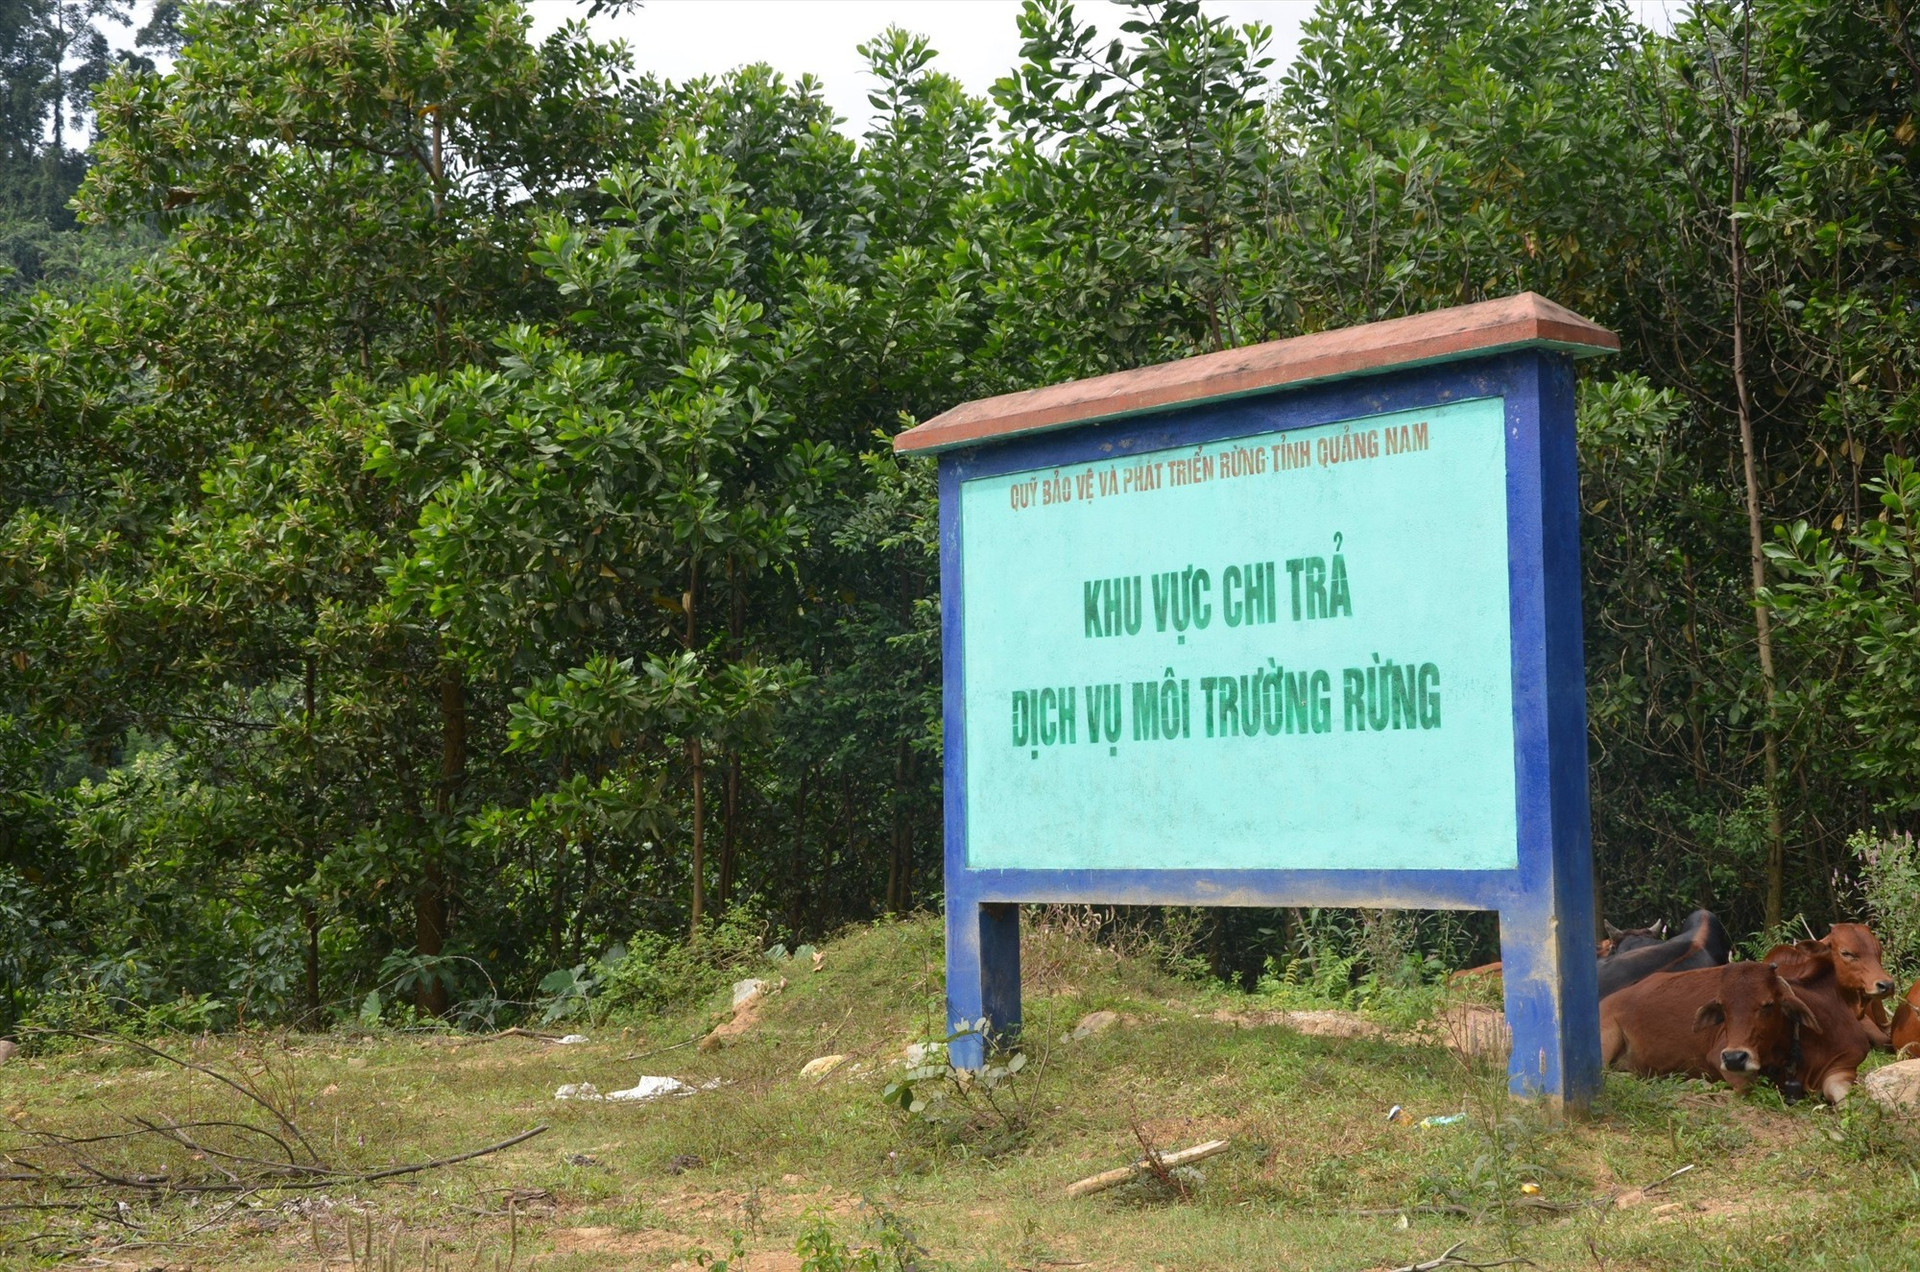 Quỹ Bảo vệ - phát triển rừng Quảng Nam nhận định, khả năng thu tiền DVMTR năm 2023 đạt 100% kế hoạch (184 tỷ đồng). Ảnh: H.P